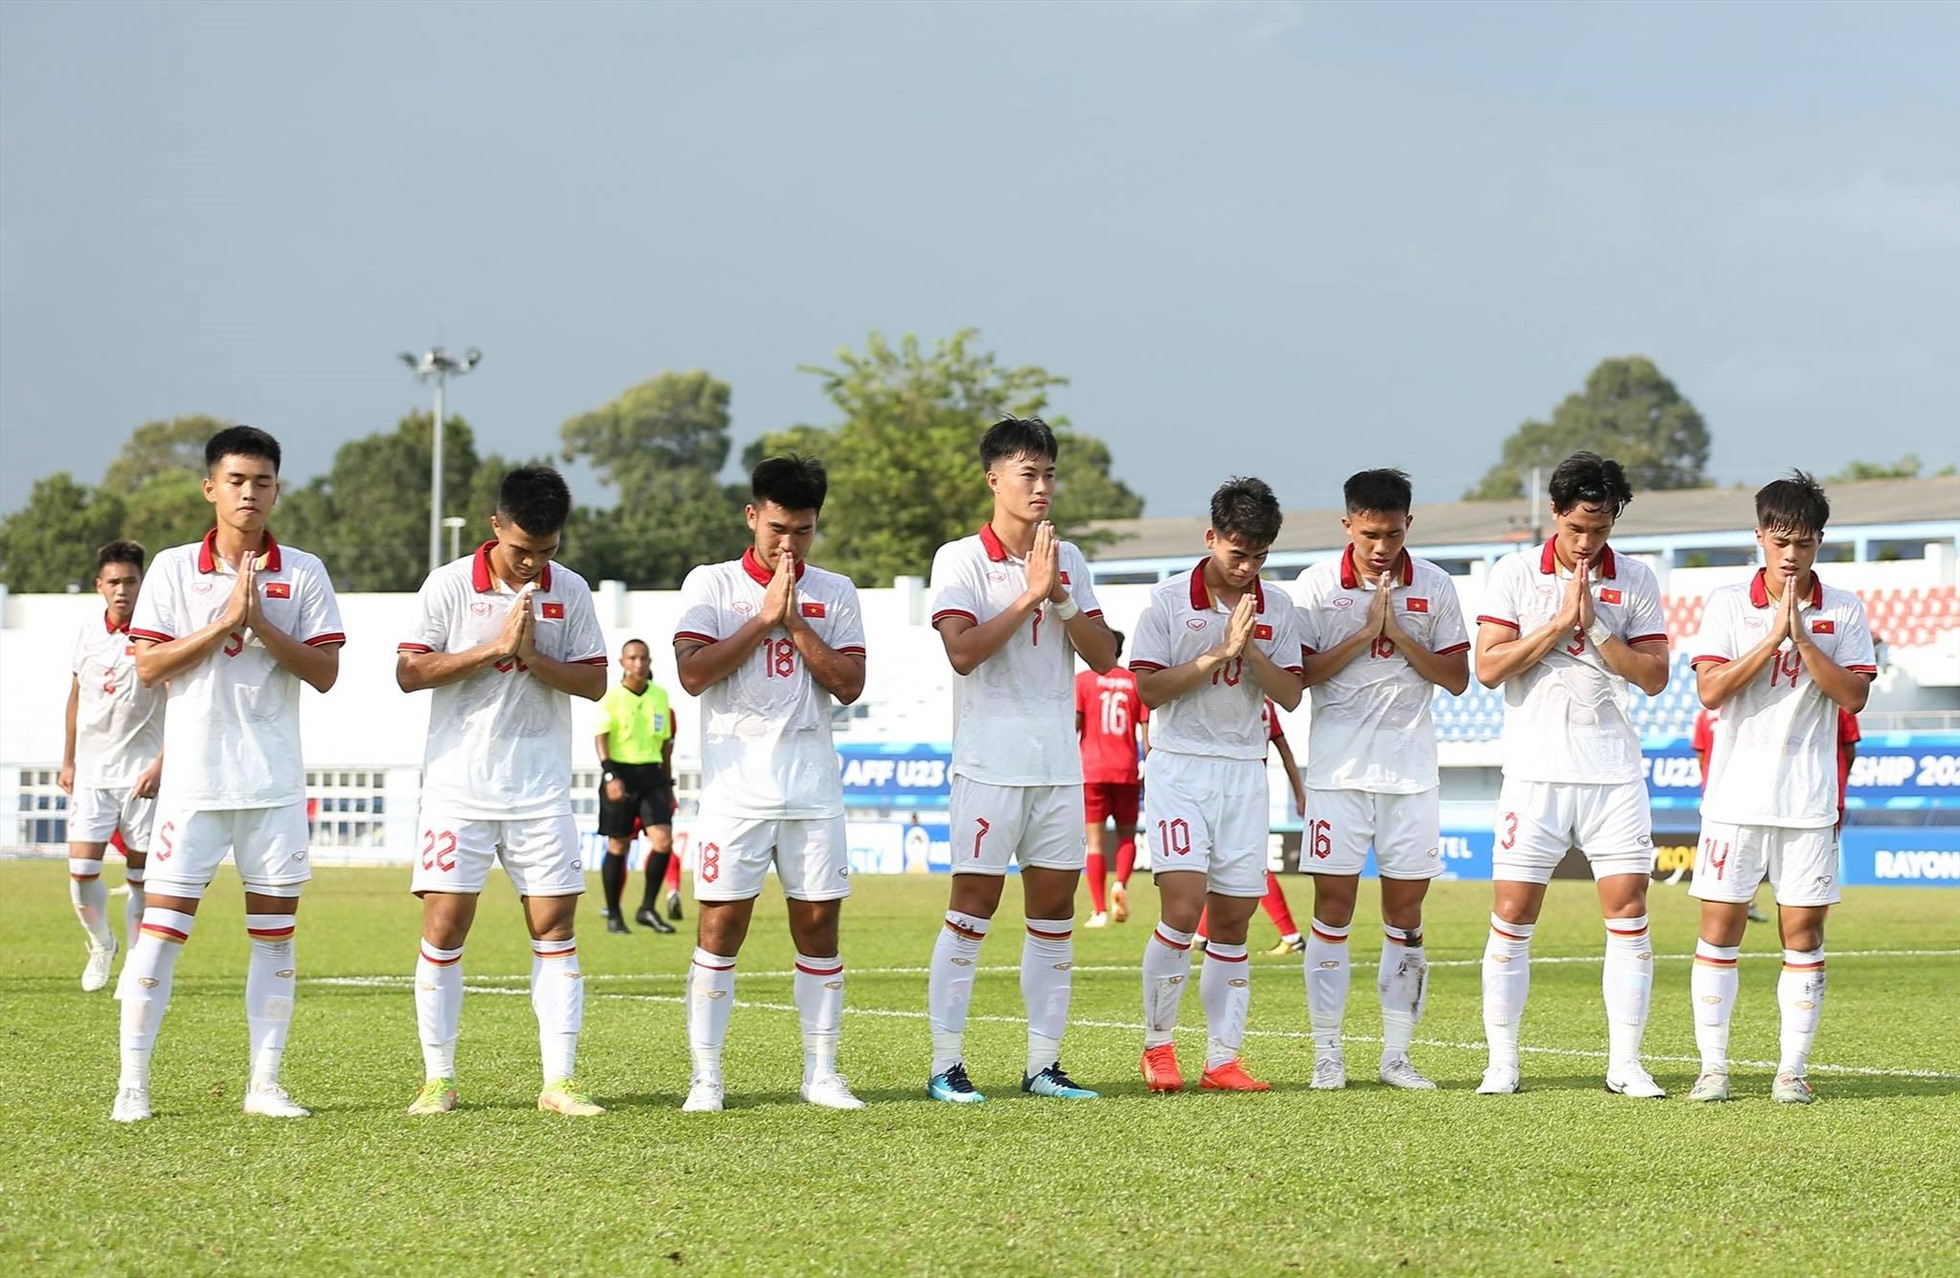 U23 Việt Nam chắp tay cầu nguyện khi ghi bàn mở tỉ số, tưởng nhớ đến 3 thành viên của câu lạc bộ Hoàng Anh Gia Lai bị tai nạn giao thông qua đời. Ảnh: Lâm Thỏa